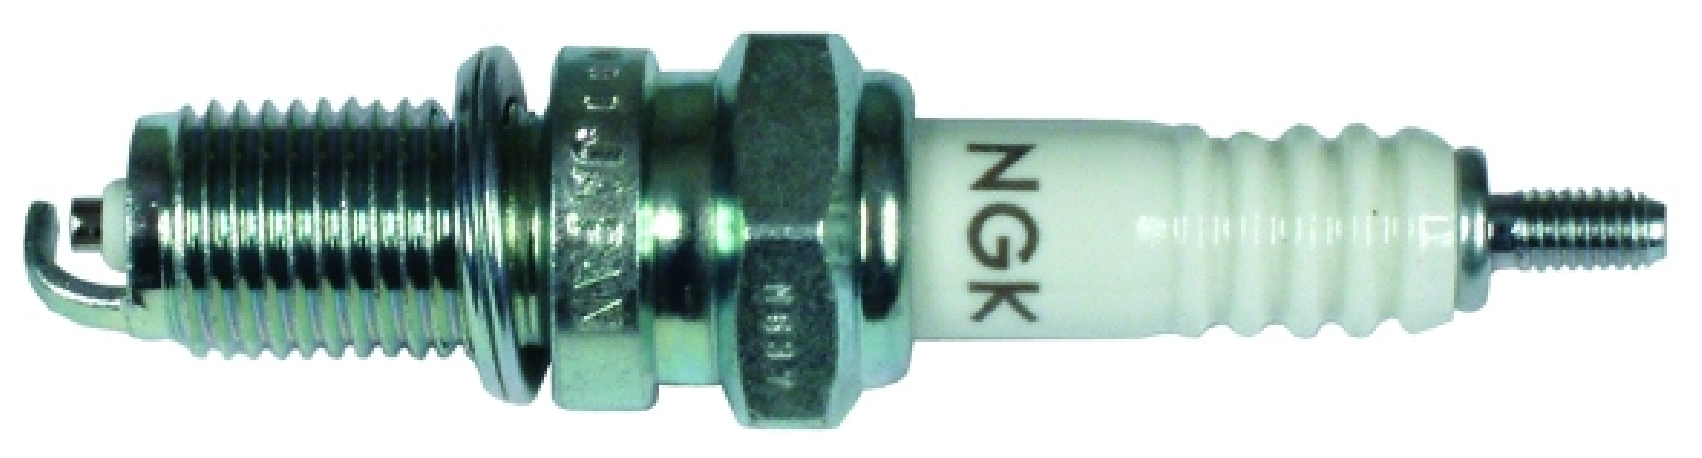 Spark plug for CB 044 / 12mm